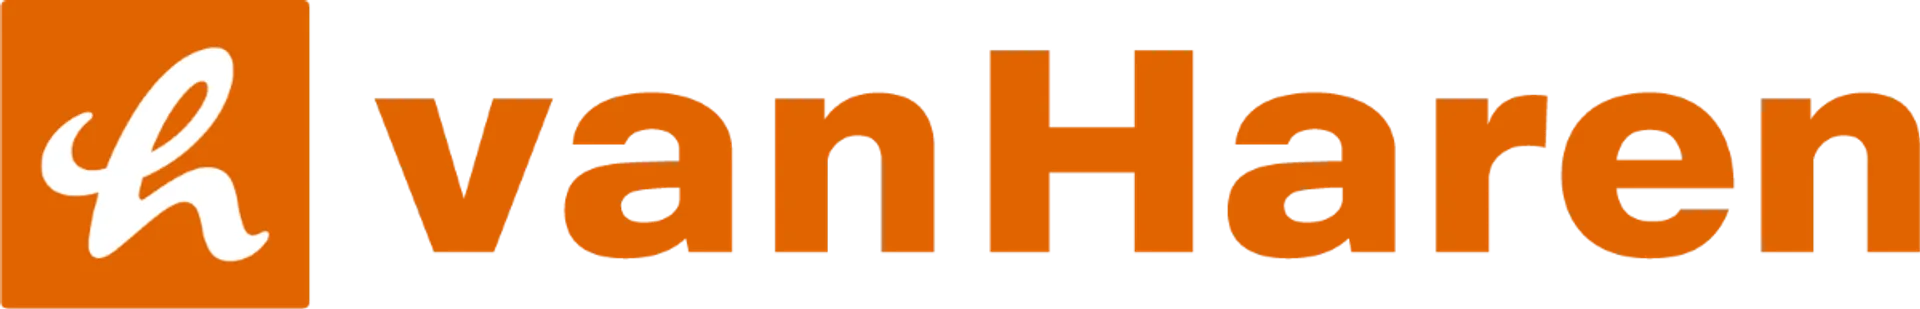 VANHAREN logo